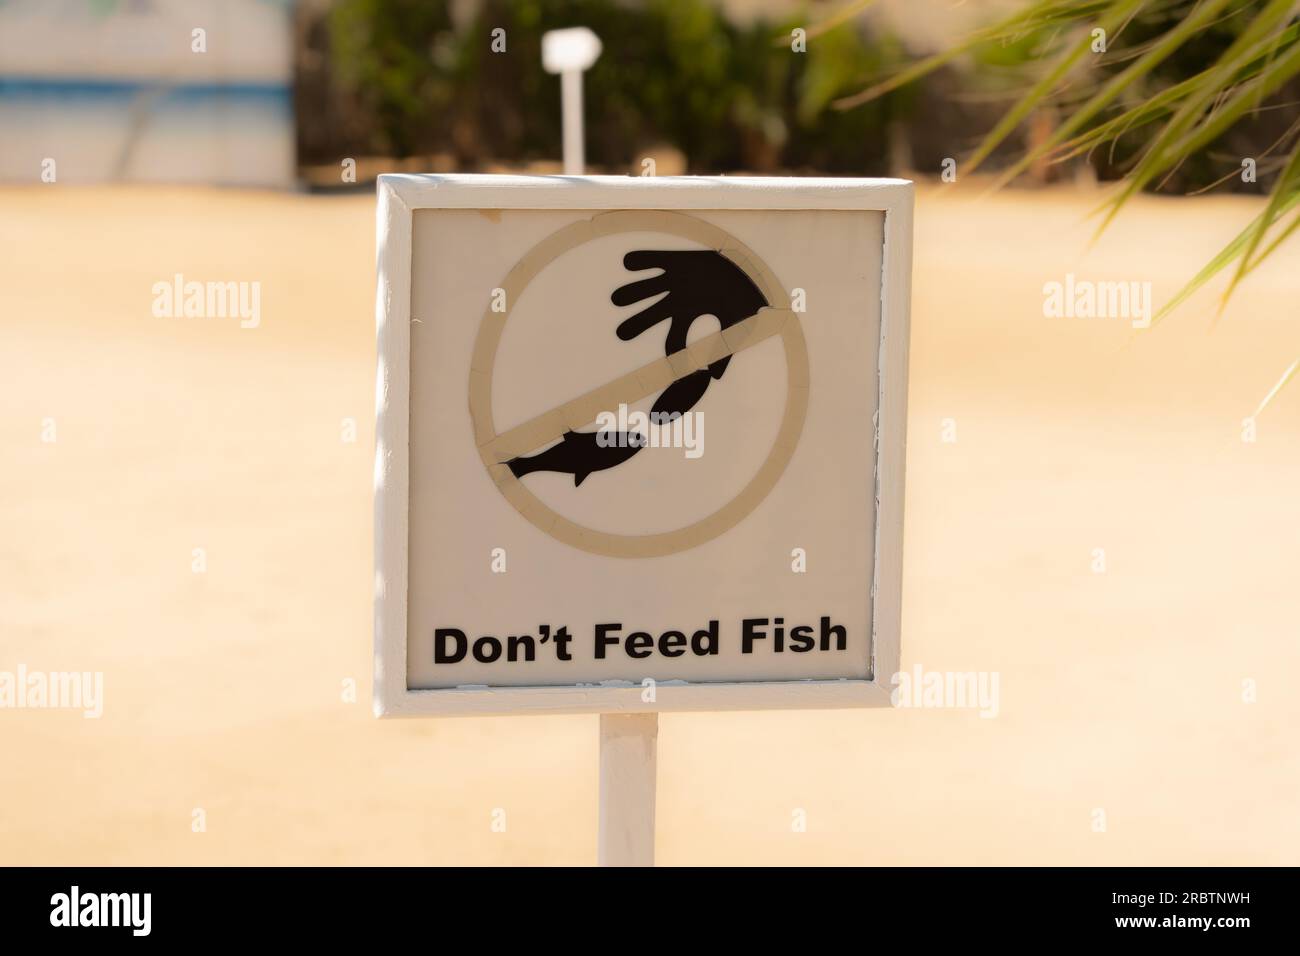 Ne pas nourrir assiette de poisson, restriction, avertissement, autocollant de sécurité Banque D'Images